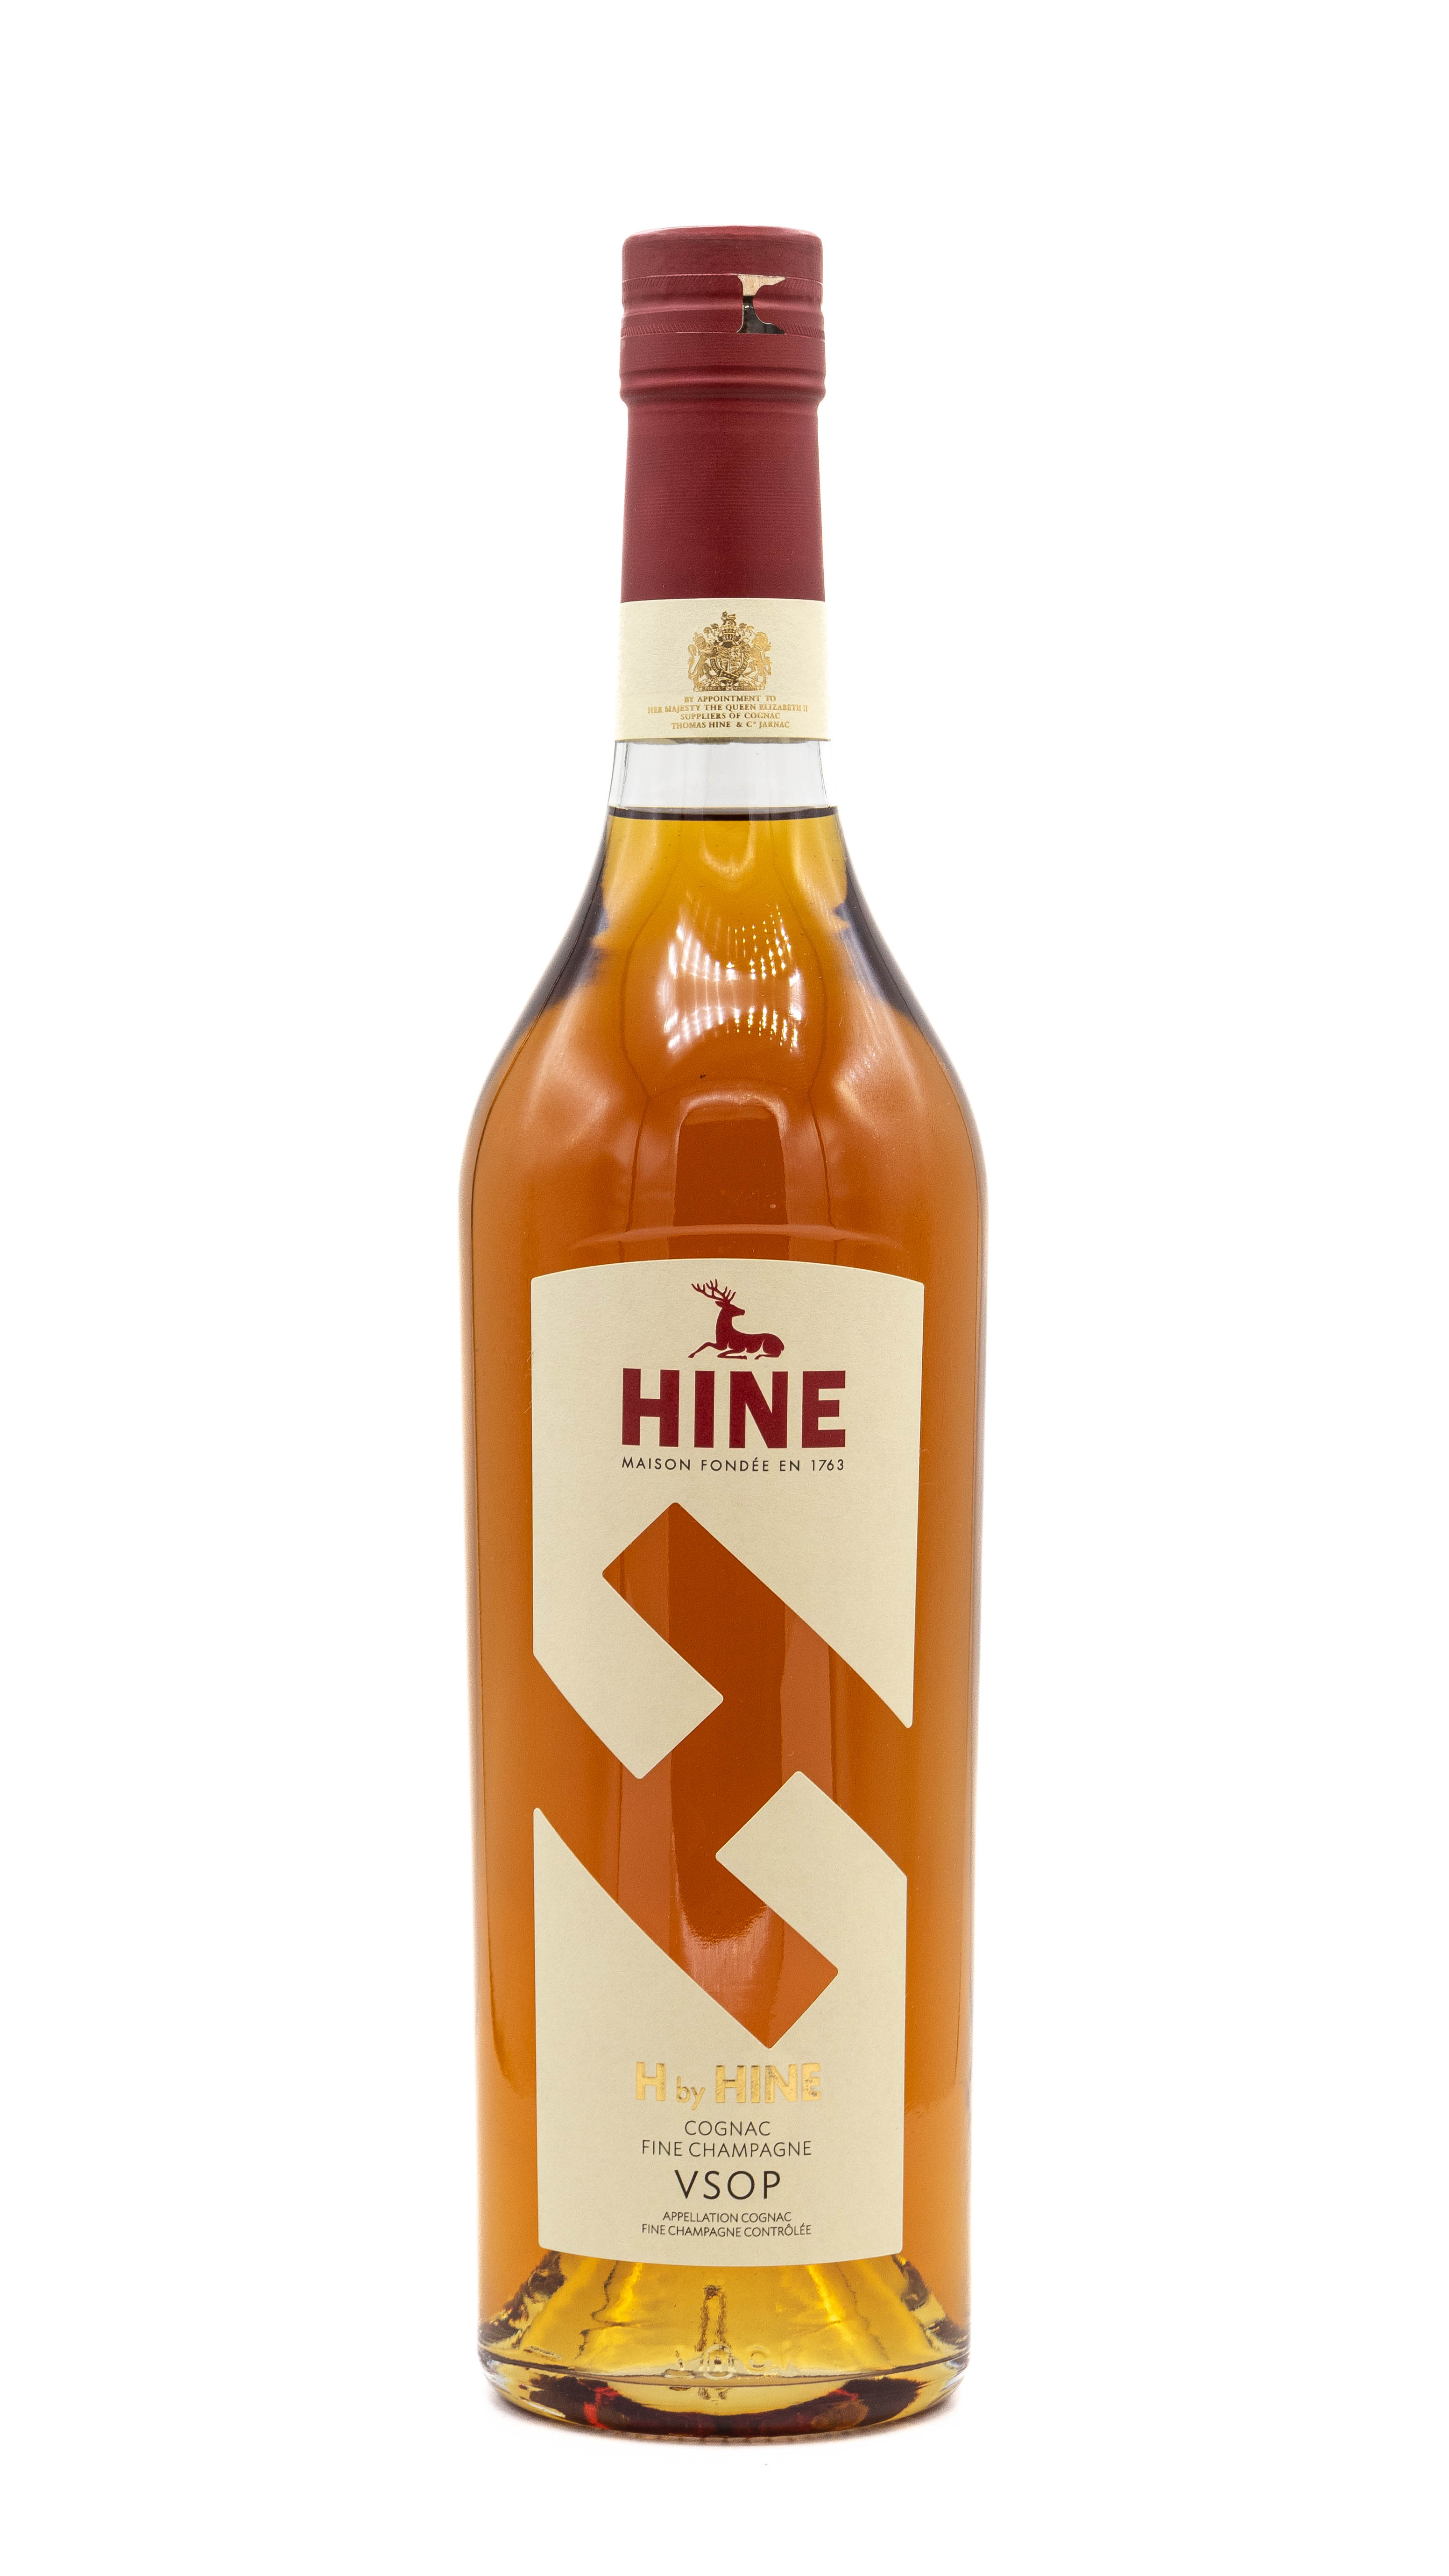 H by Hine Cognac Fine Champagne VSOP 40Proz